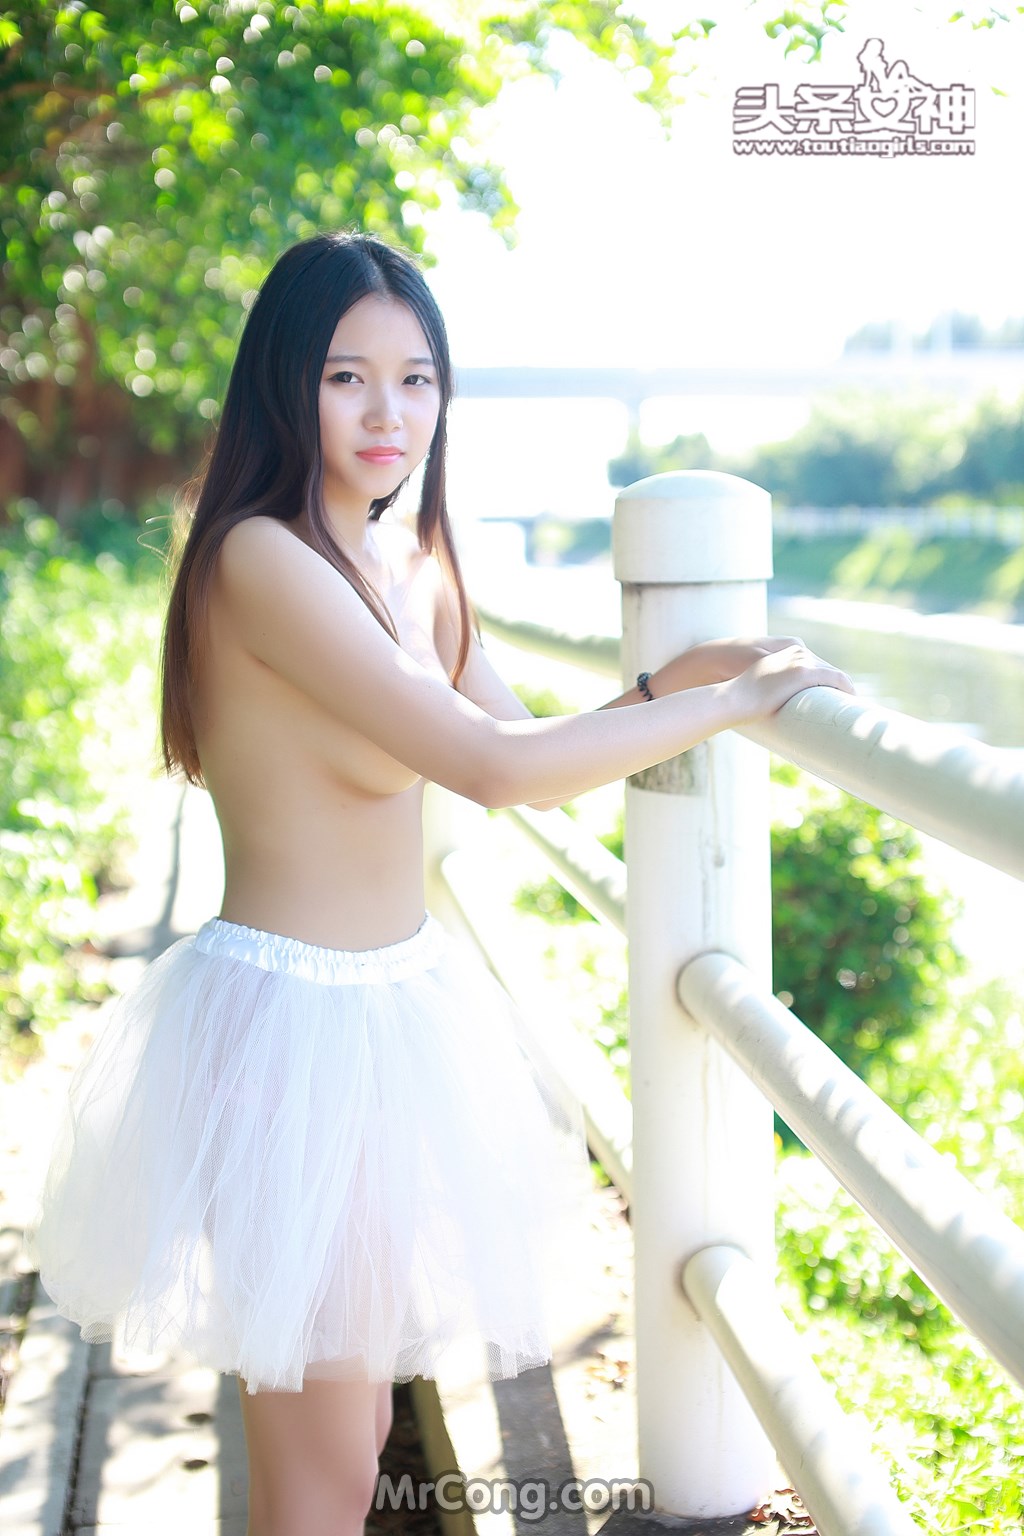 TouTiao 2016-08-03: Model Xiao Yu (小雨) (38 photos)